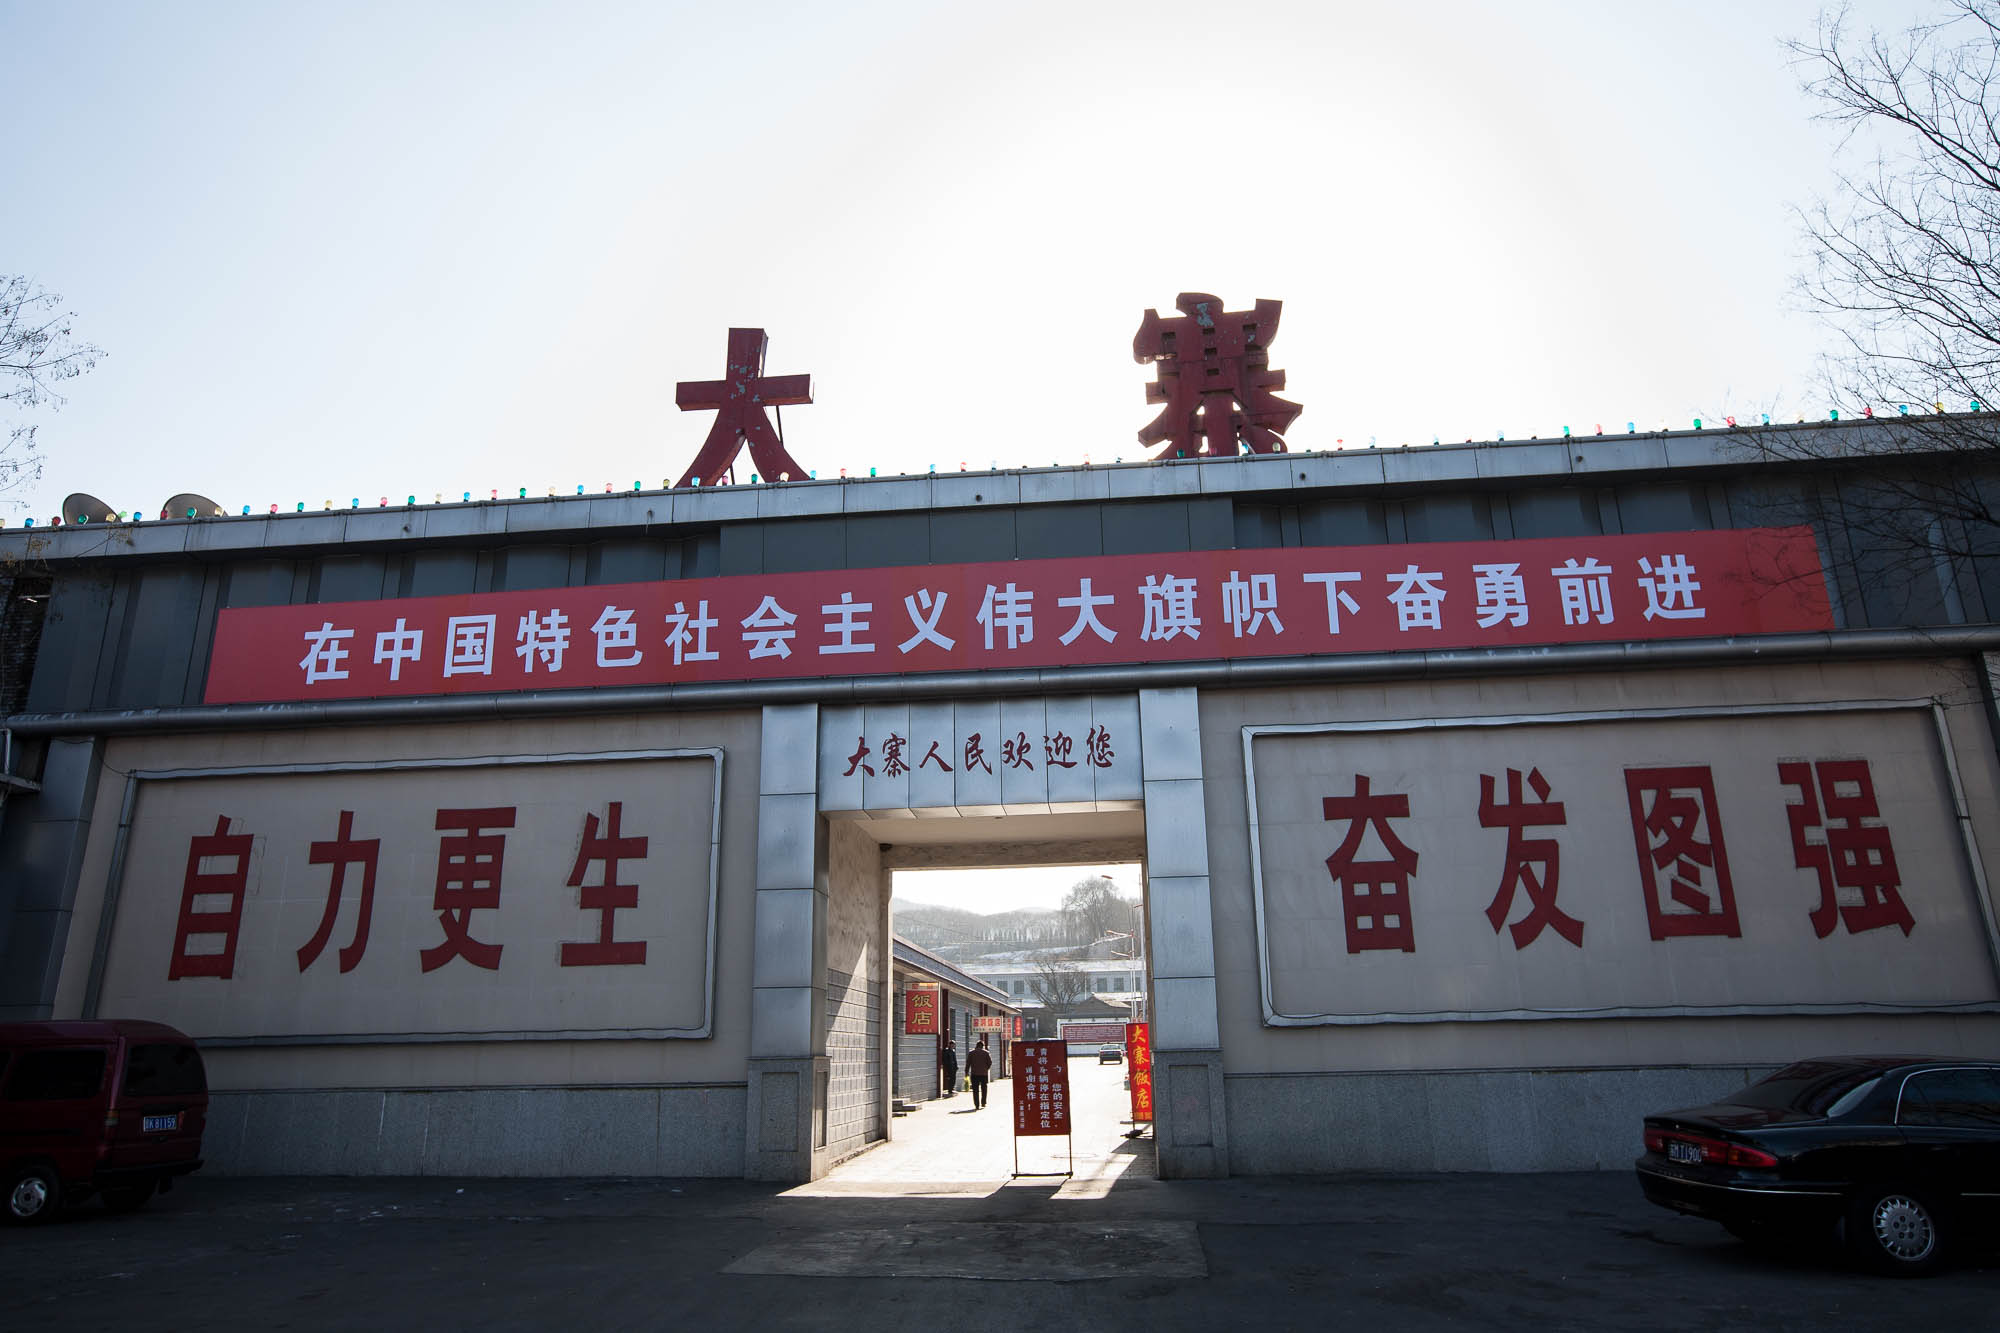 gate of the Dazhai Communist Model Village